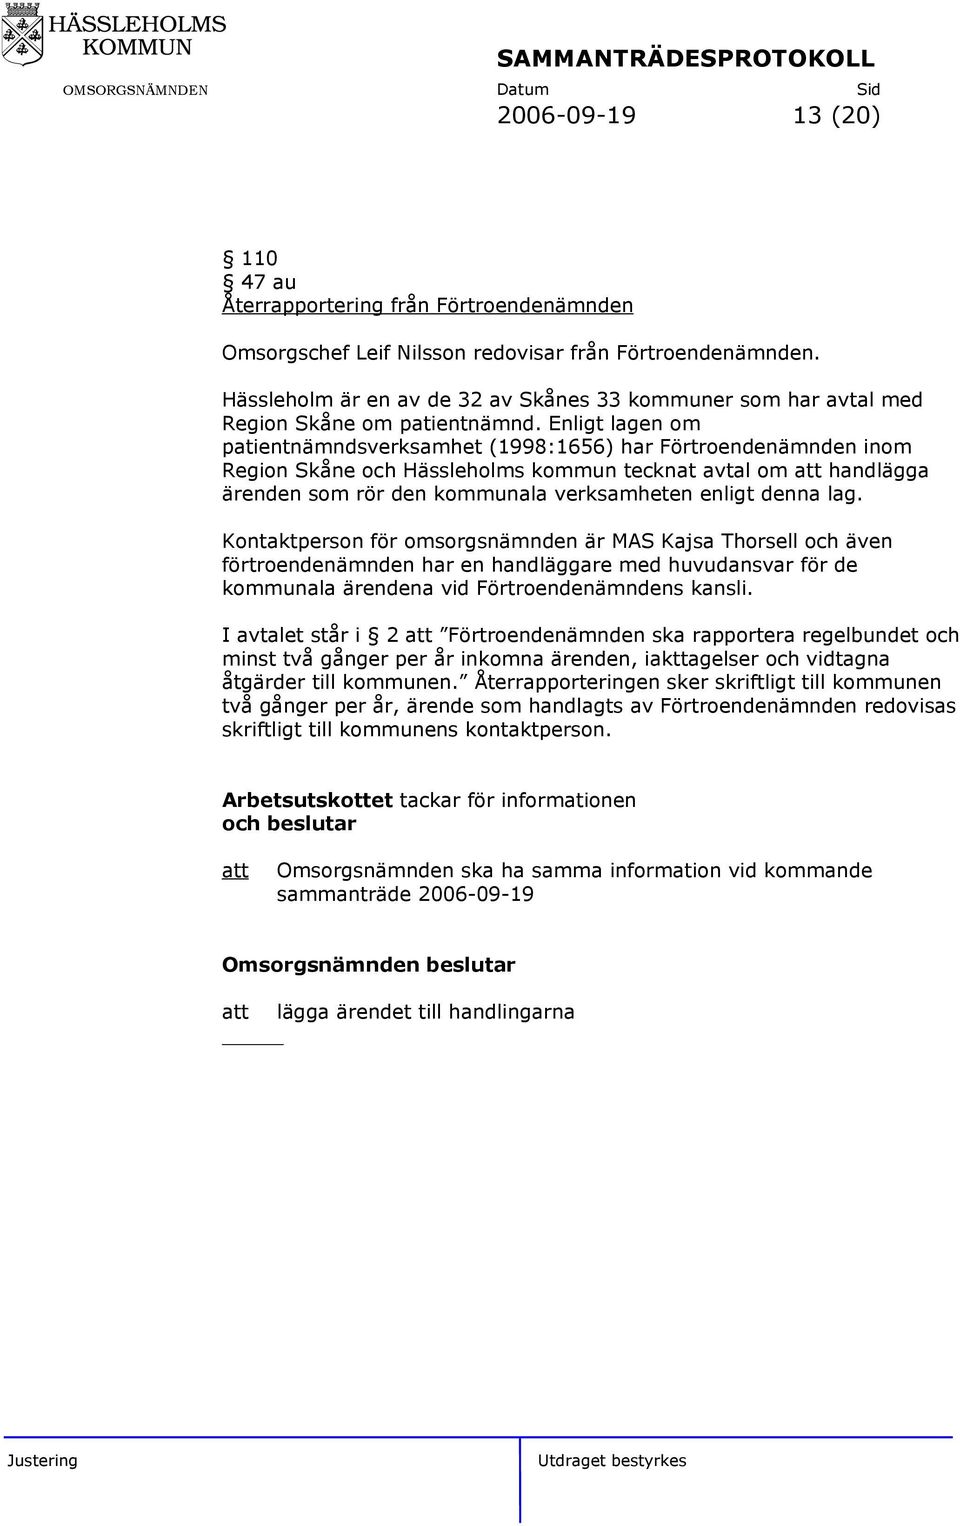 Enligt lagen om patientnämndsverksamhet (1998:1656) har Förtroendenämnden inom Region Skåne och Hässleholms kommun tecknat avtal om att handlägga ärenden som rör den kommunala verksamheten enligt